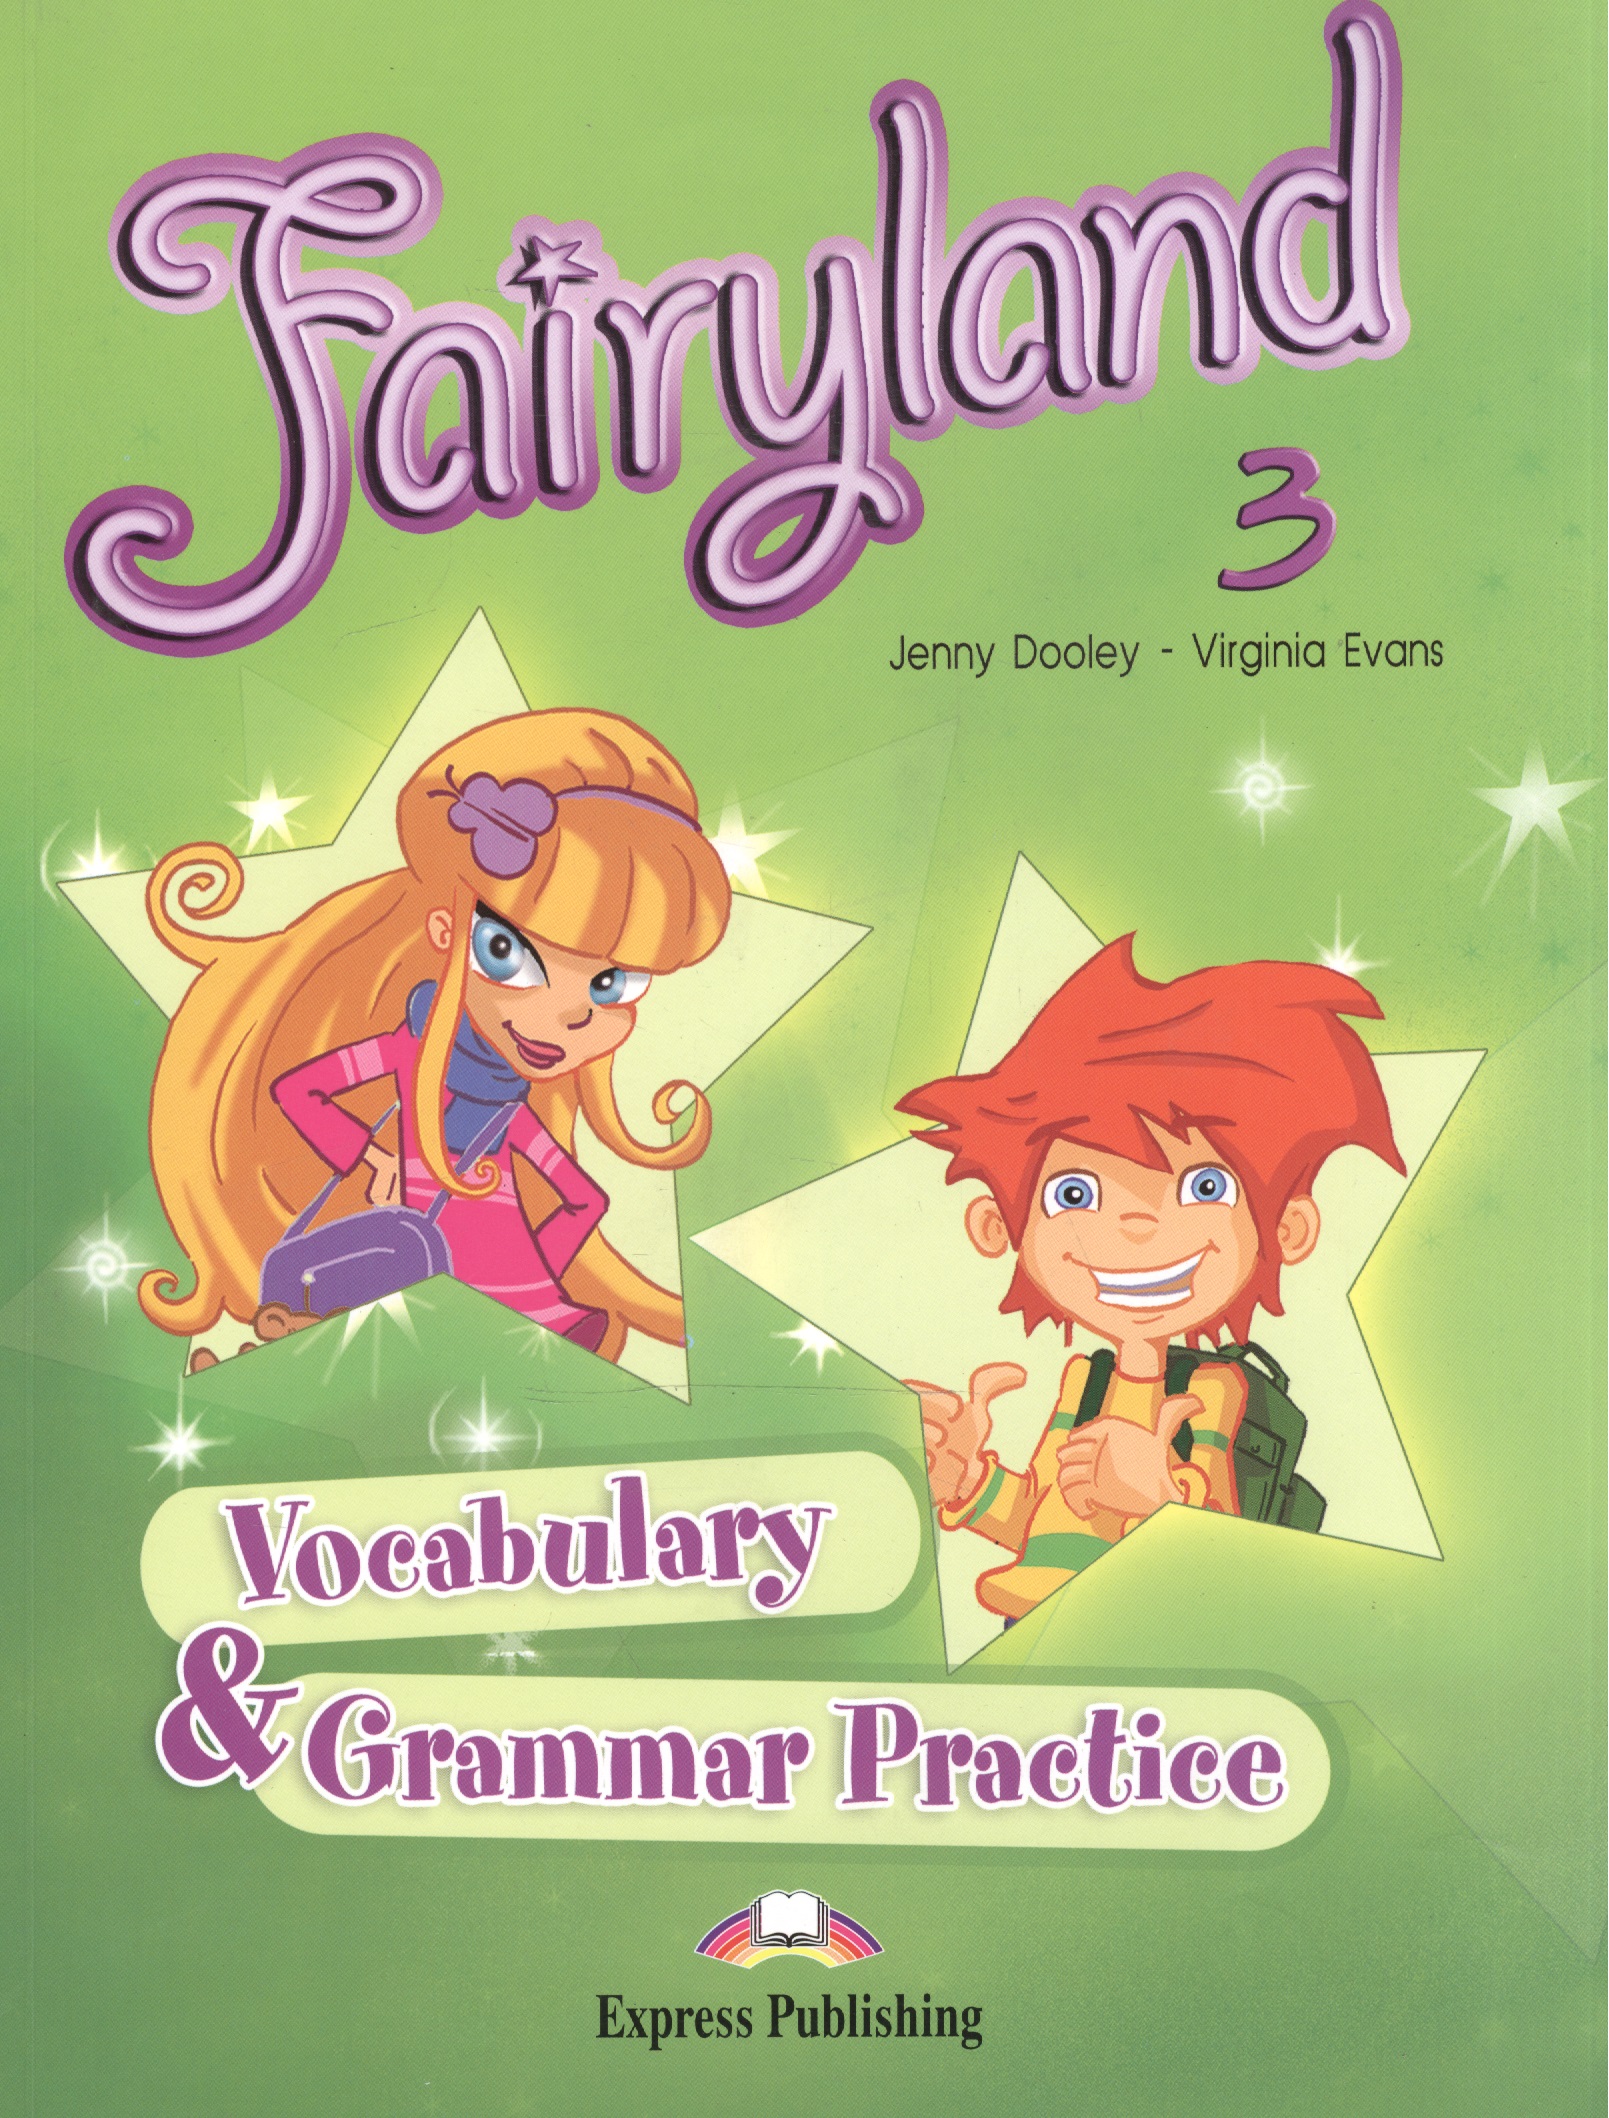 Эванс Вирджиния Fairyland 3. Vocabulary & Grammar Practice. Beginner. Сборник лексических и граммат. упражнений. italian grammar and practice